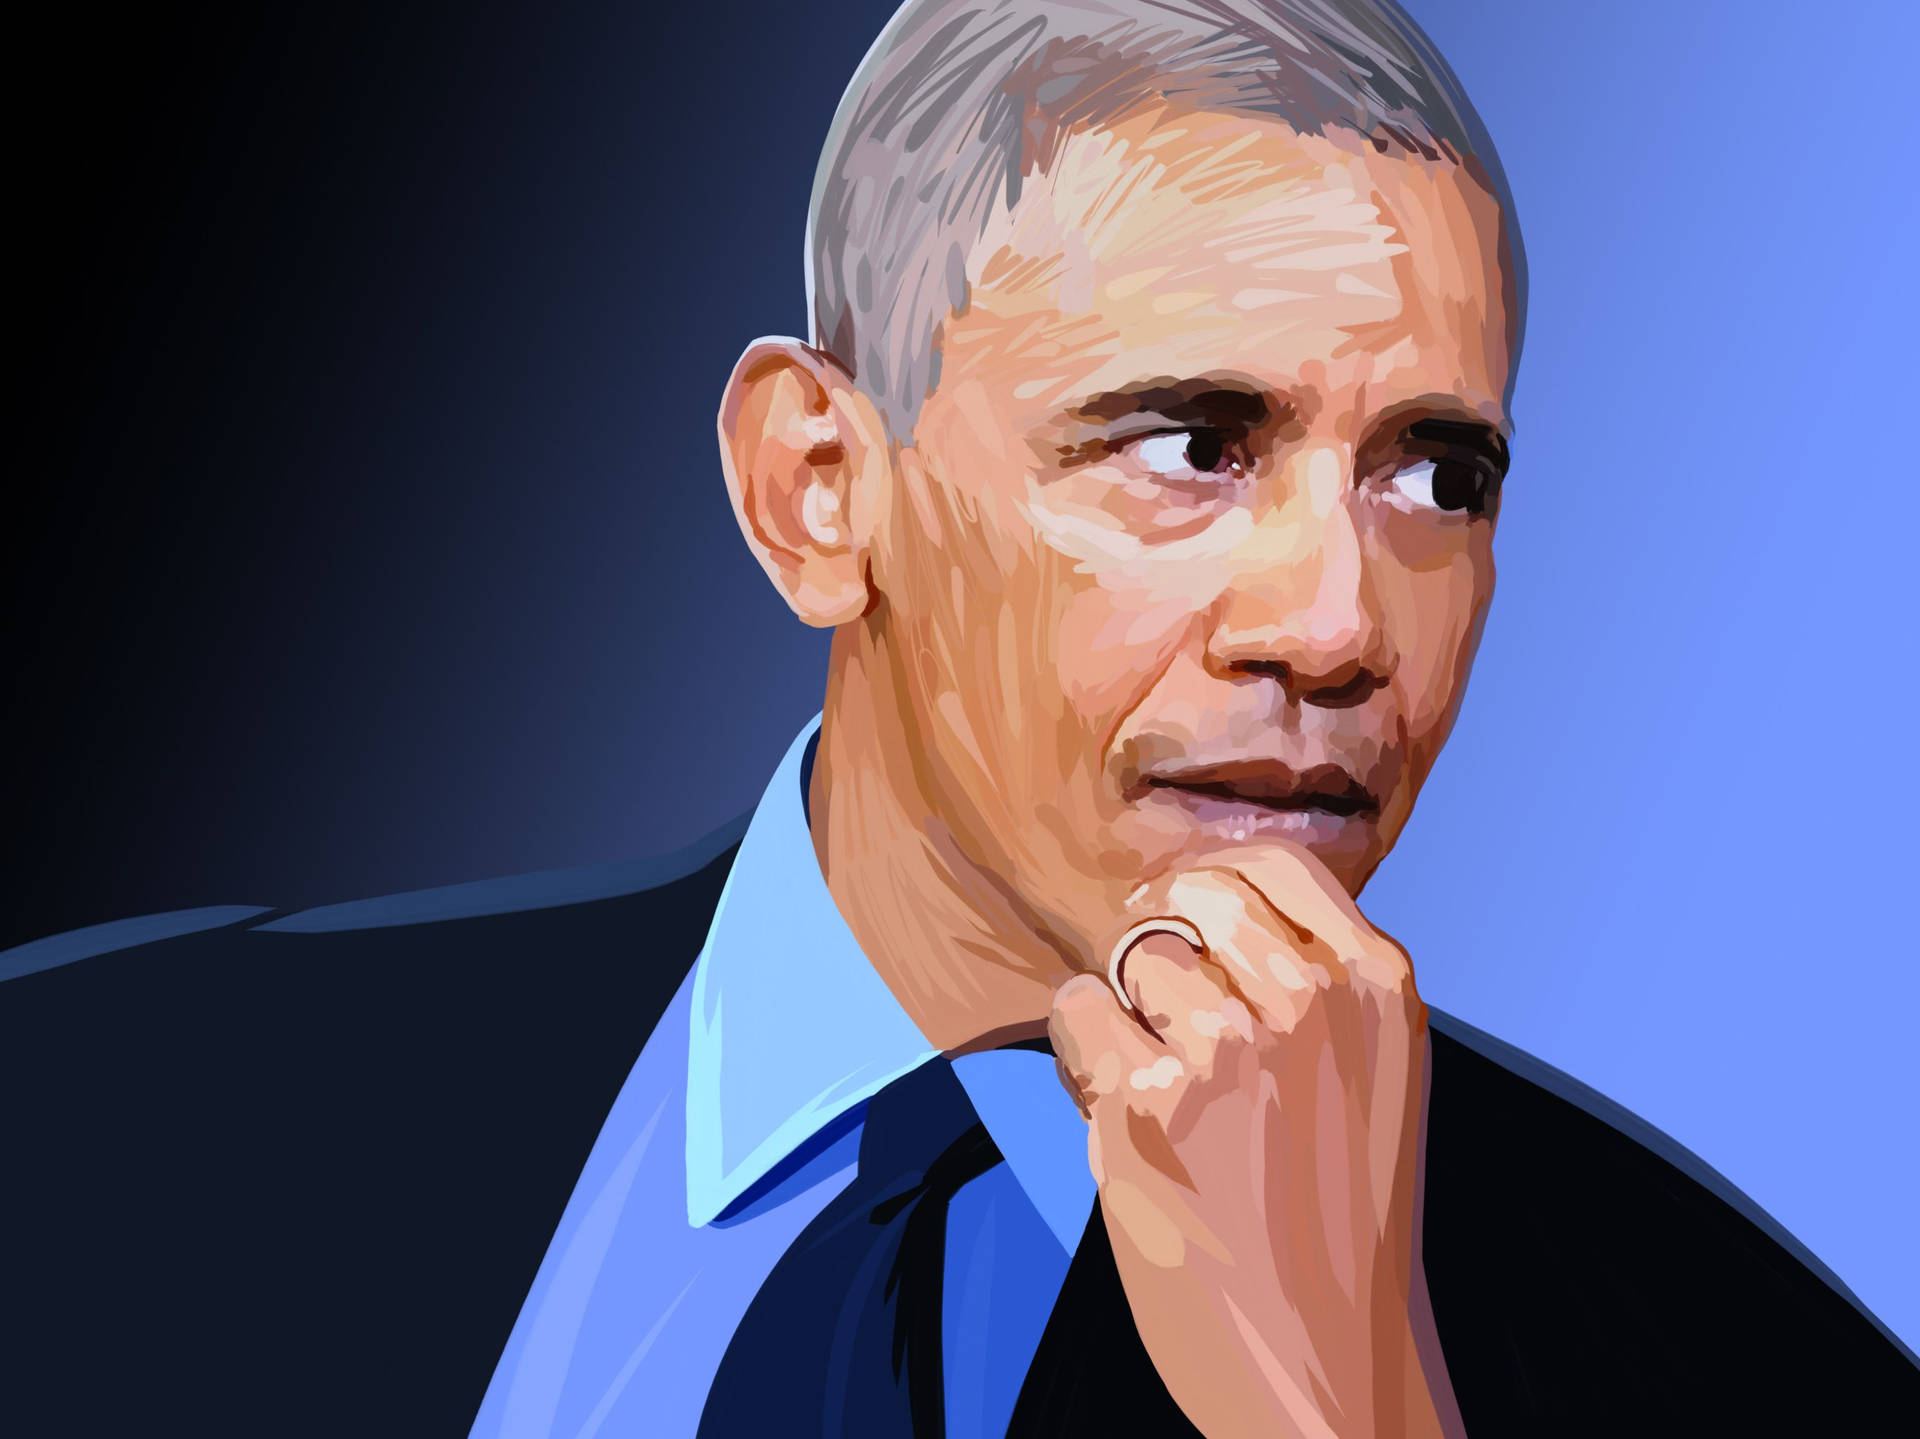 Barack Obama Wallpaper Images